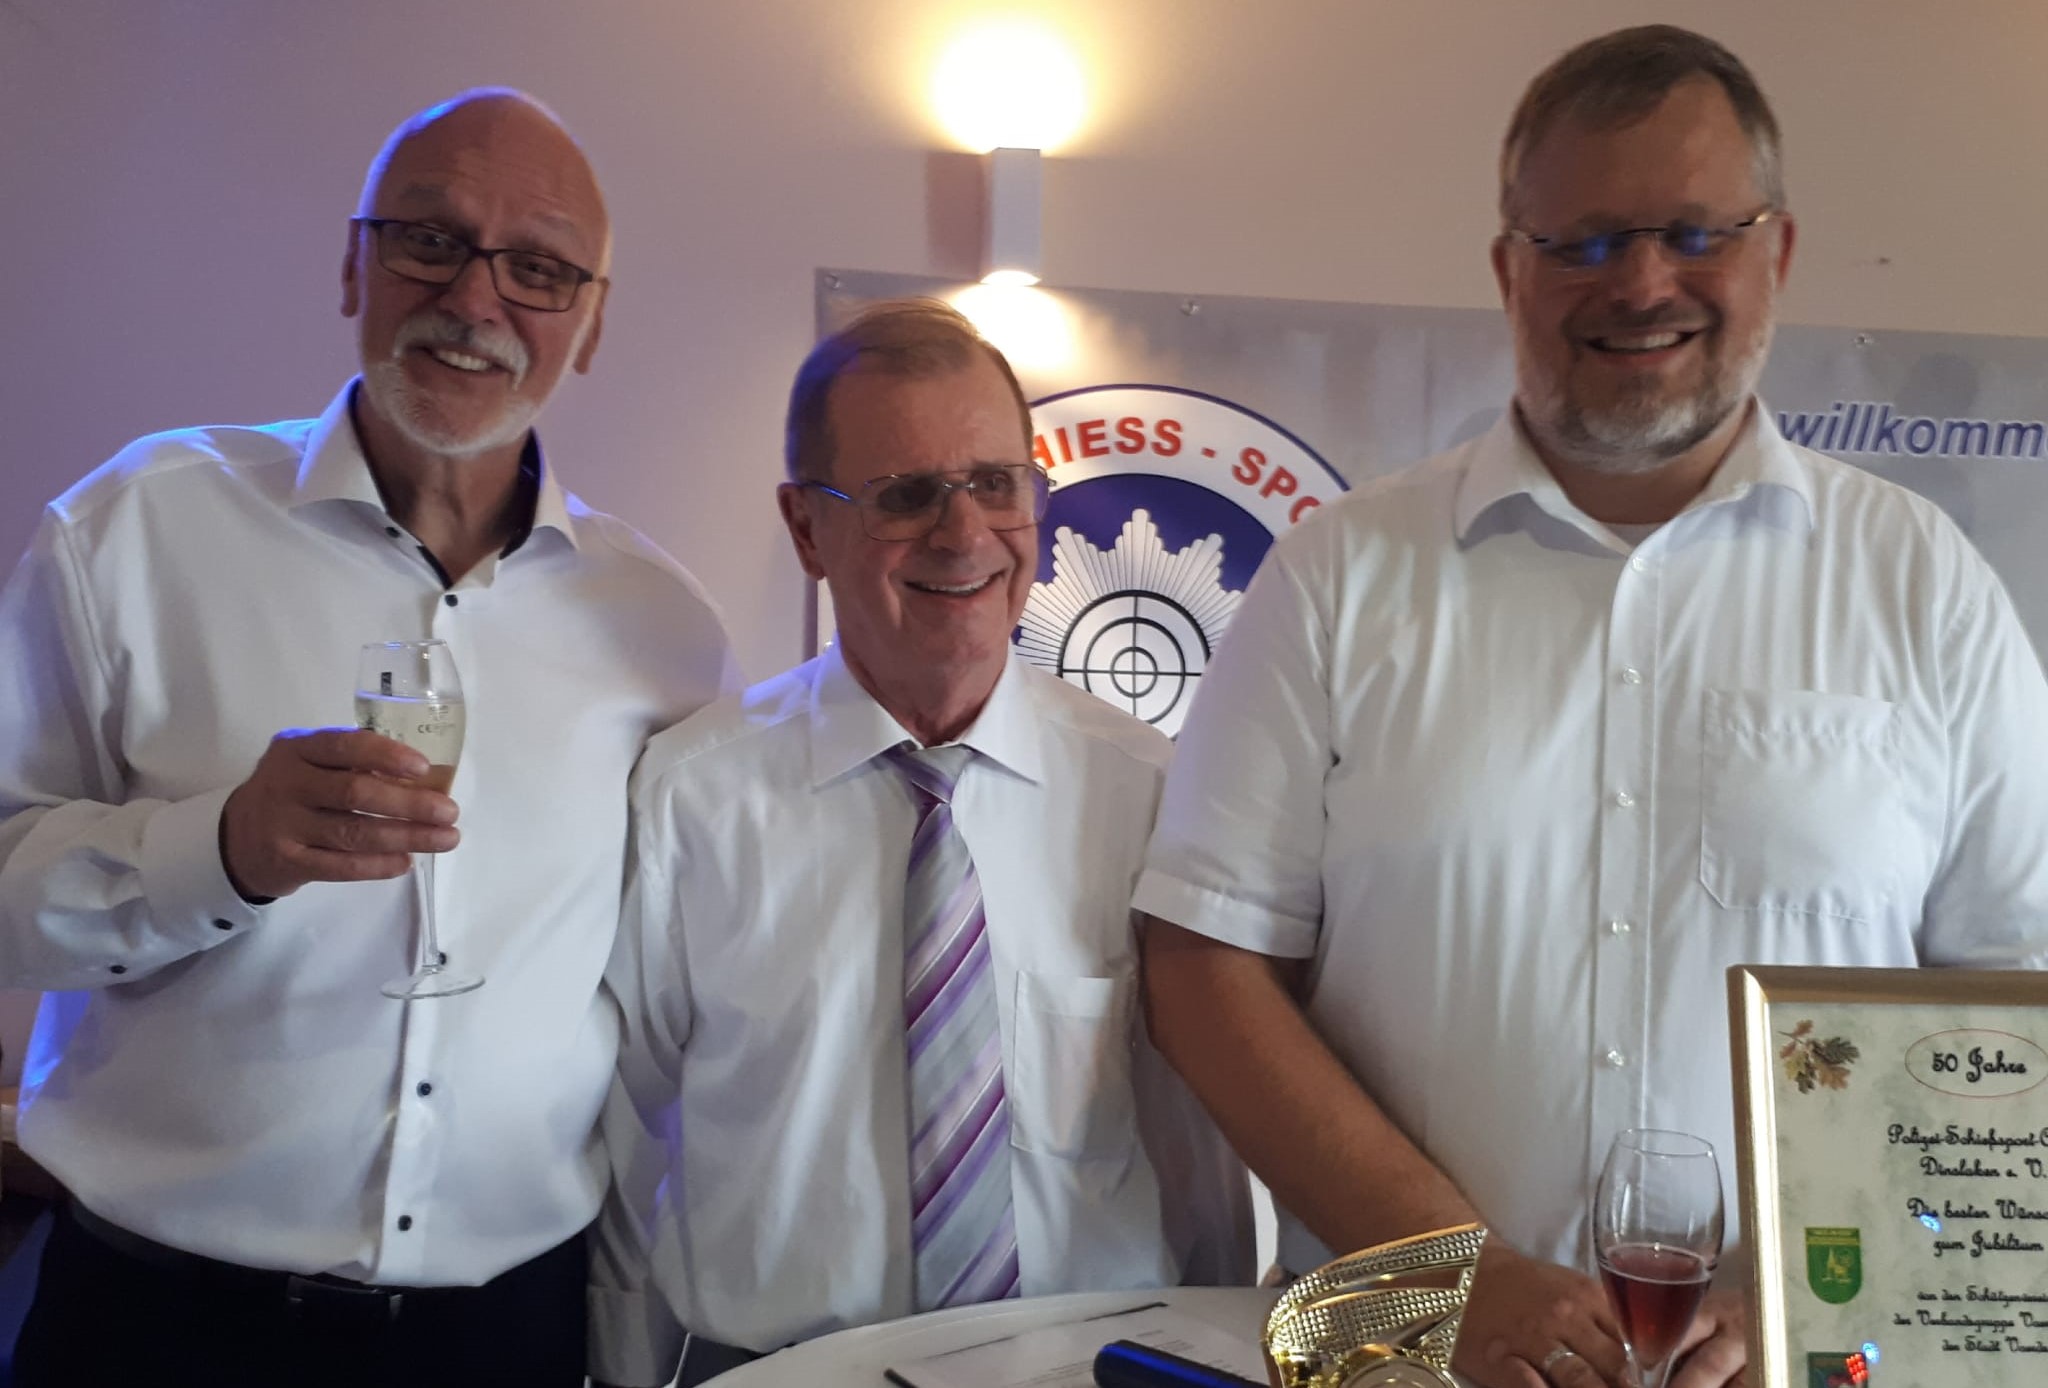 Auf dem Foto sind die drei Generationen der PSSC-Leitung zu sehen: Links der Vorsitzende Eckhard Lauer, in der Mitte der Ehrenpräsident Host Schmelt und rechts der stellv. Vorsitzende Stefan Freise